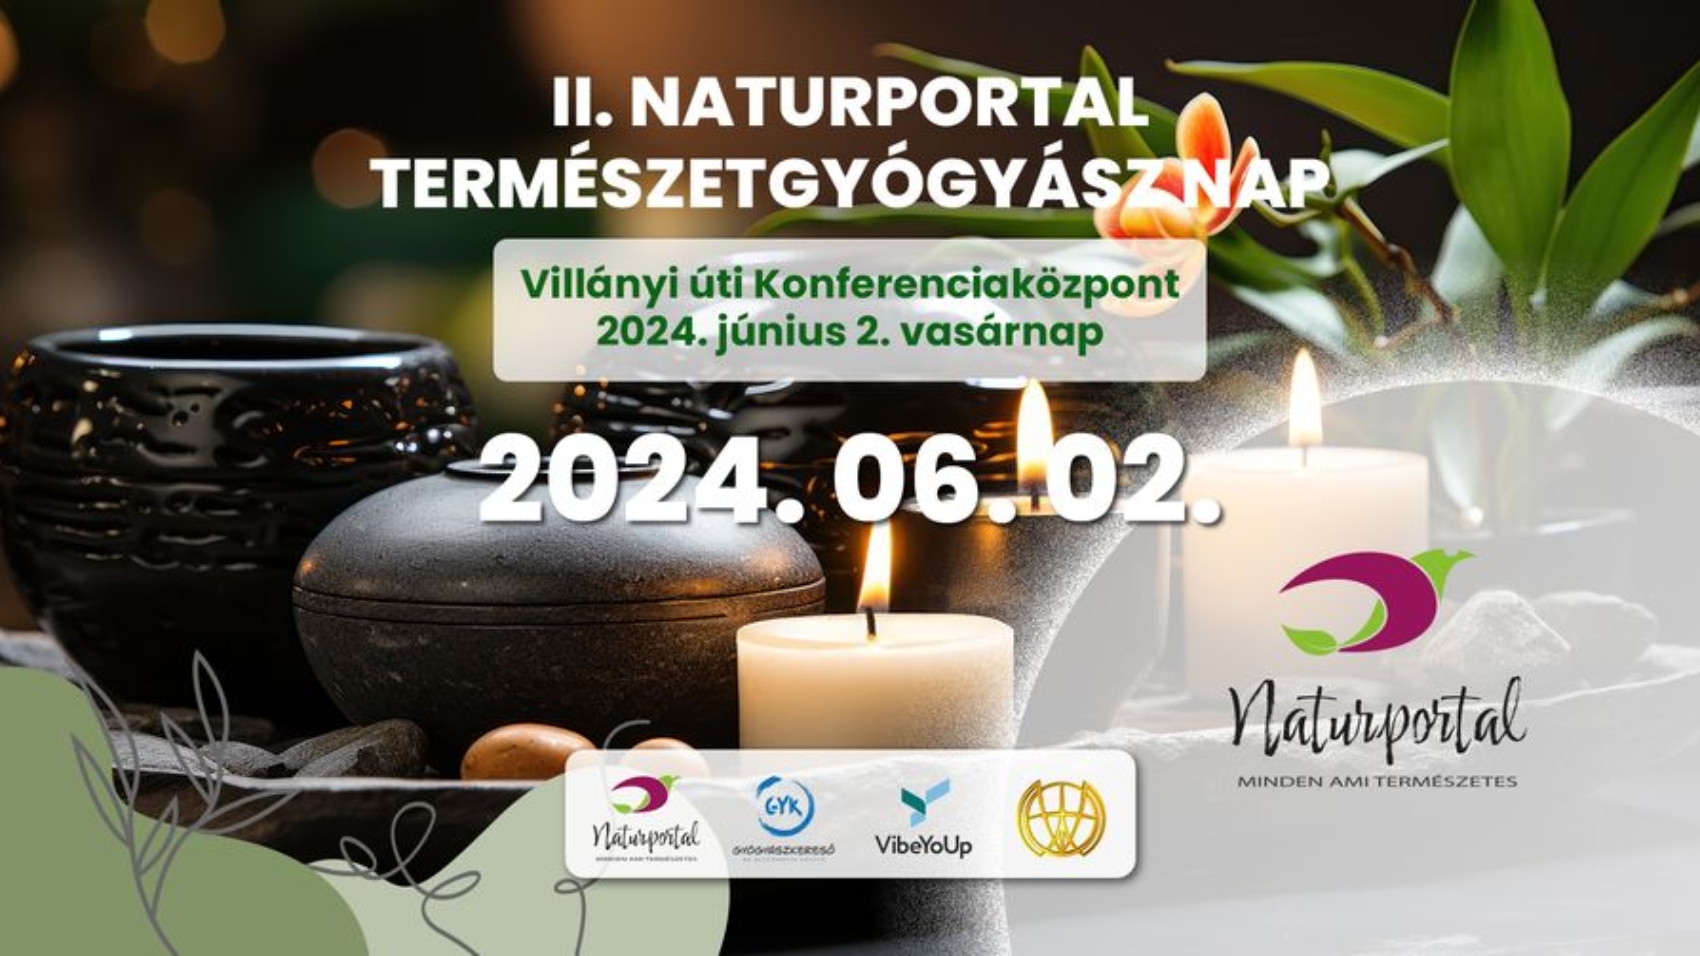 II. Naturportal Természetgyógyász Nap – Légy részese a Természetes Gyógyulásnak 2024. június 2-án 